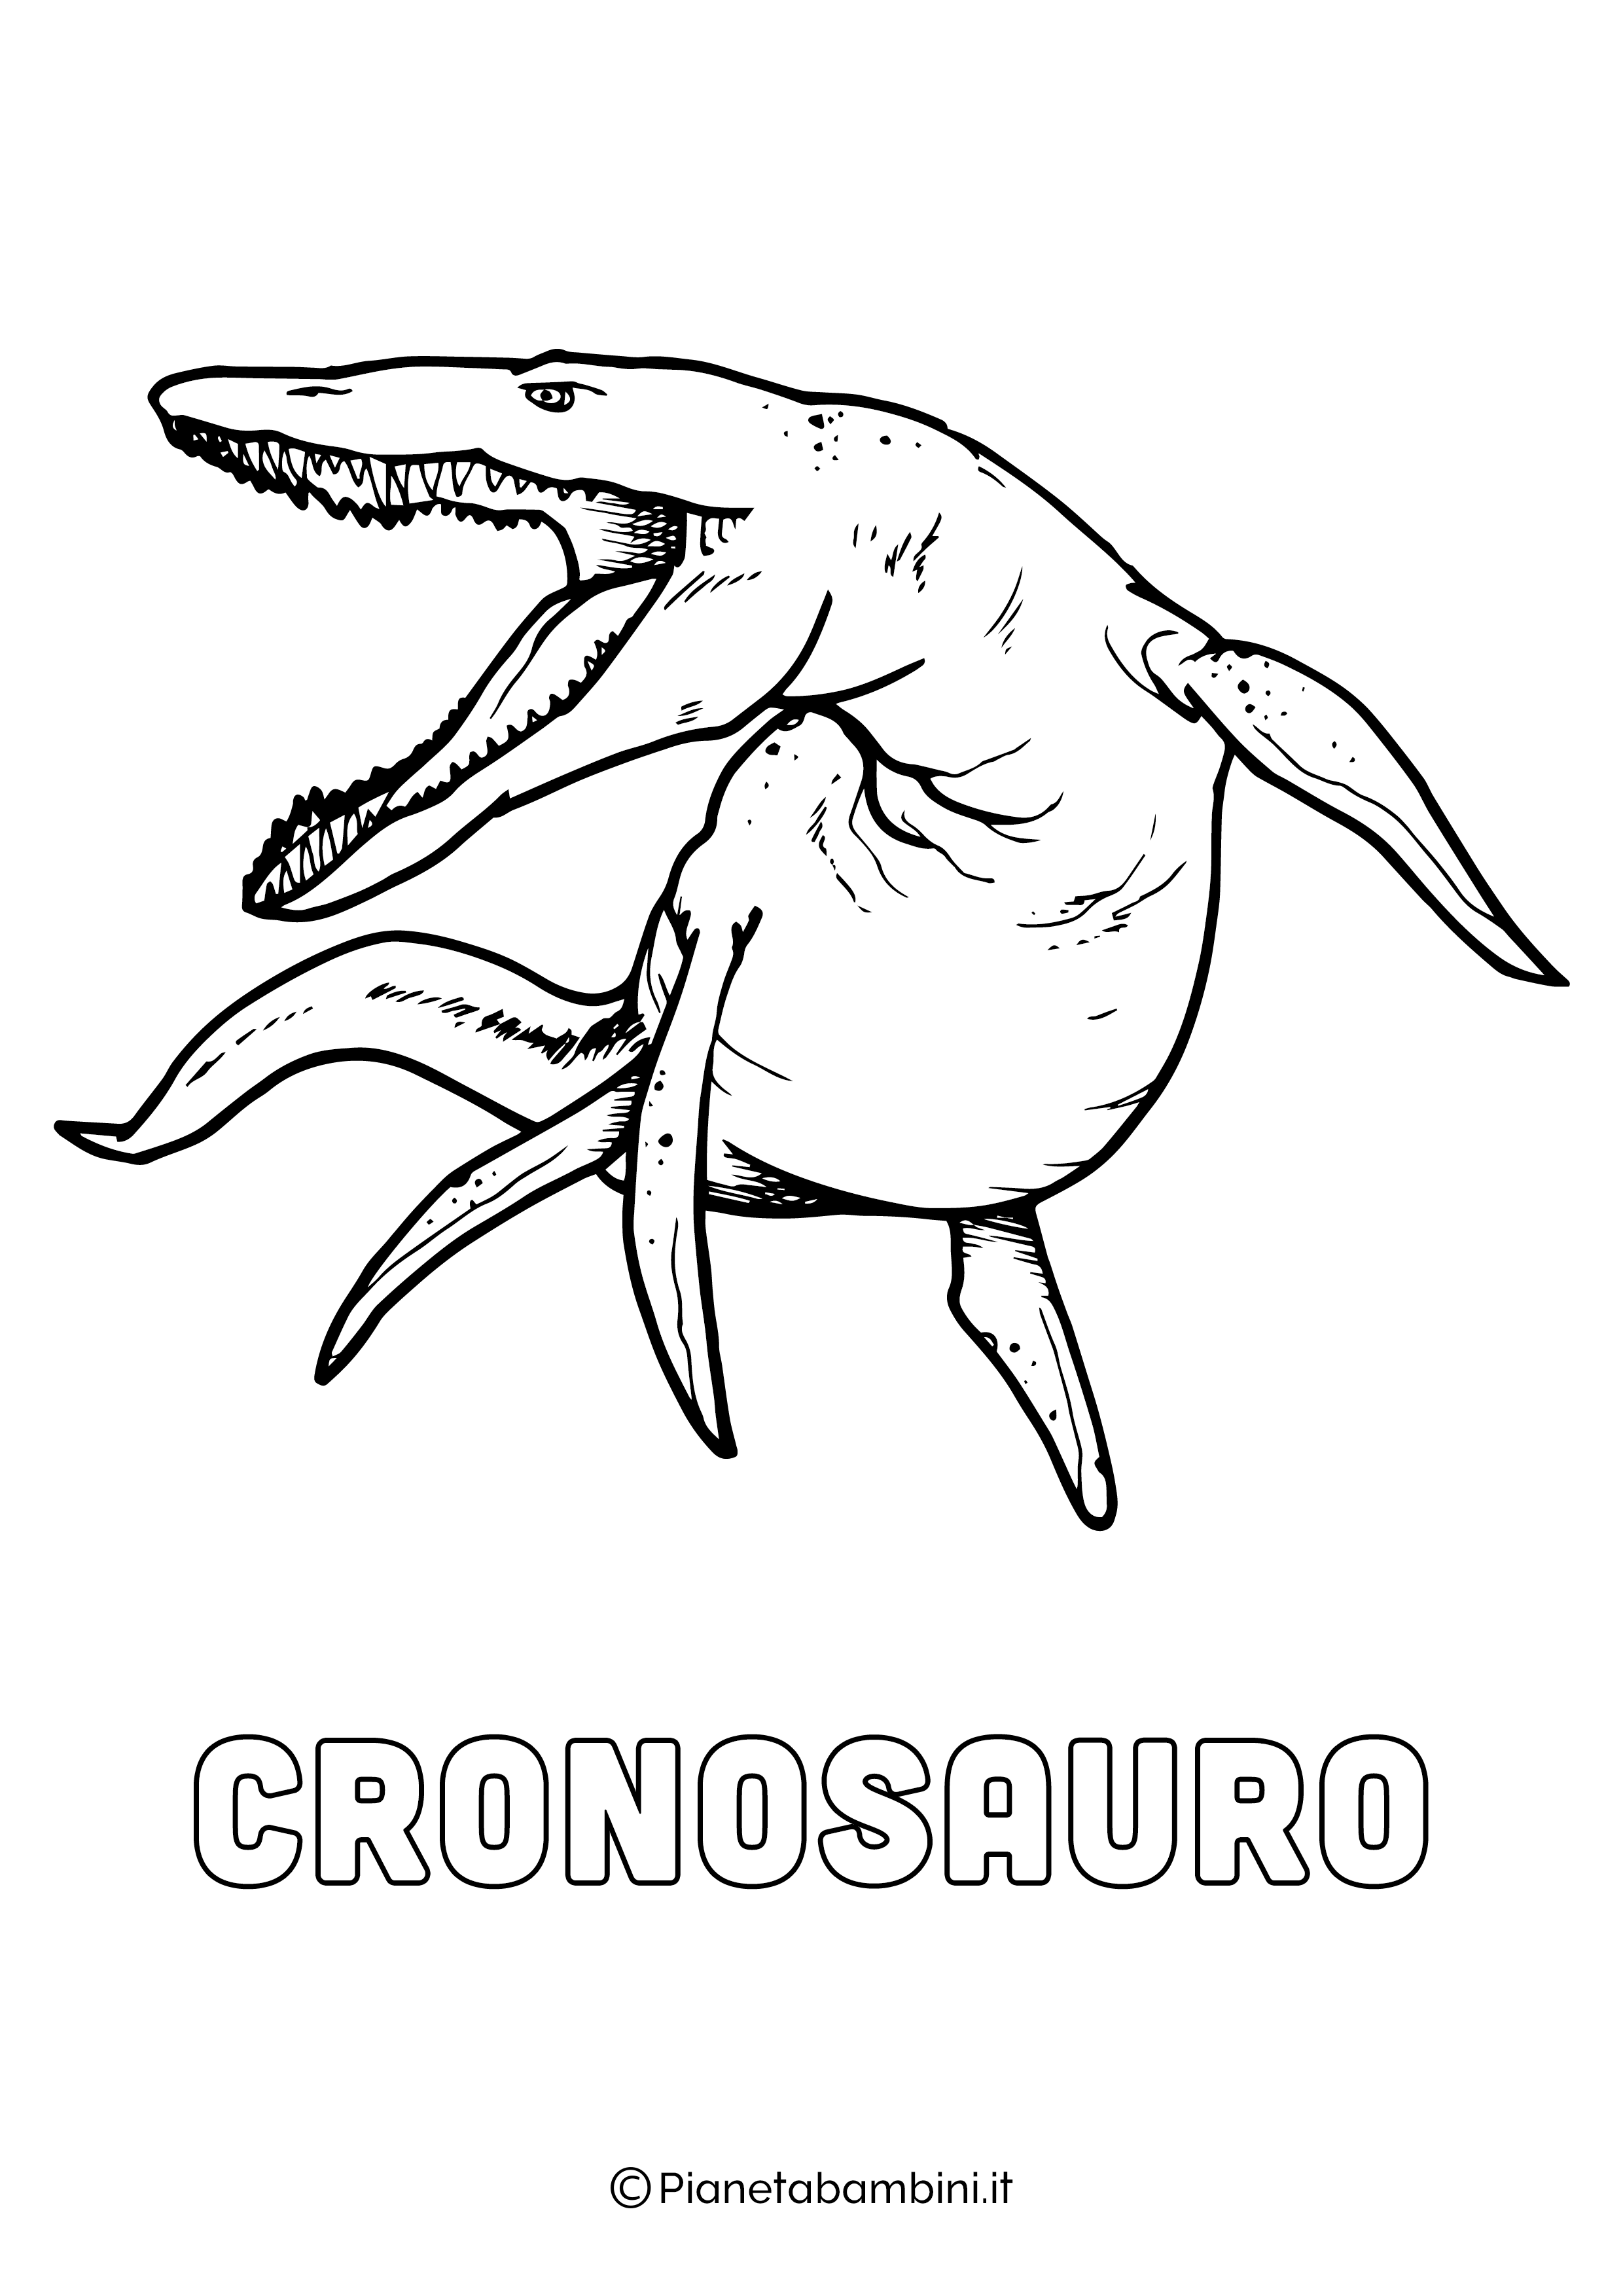 Dinosauro Cronosauro da colorare